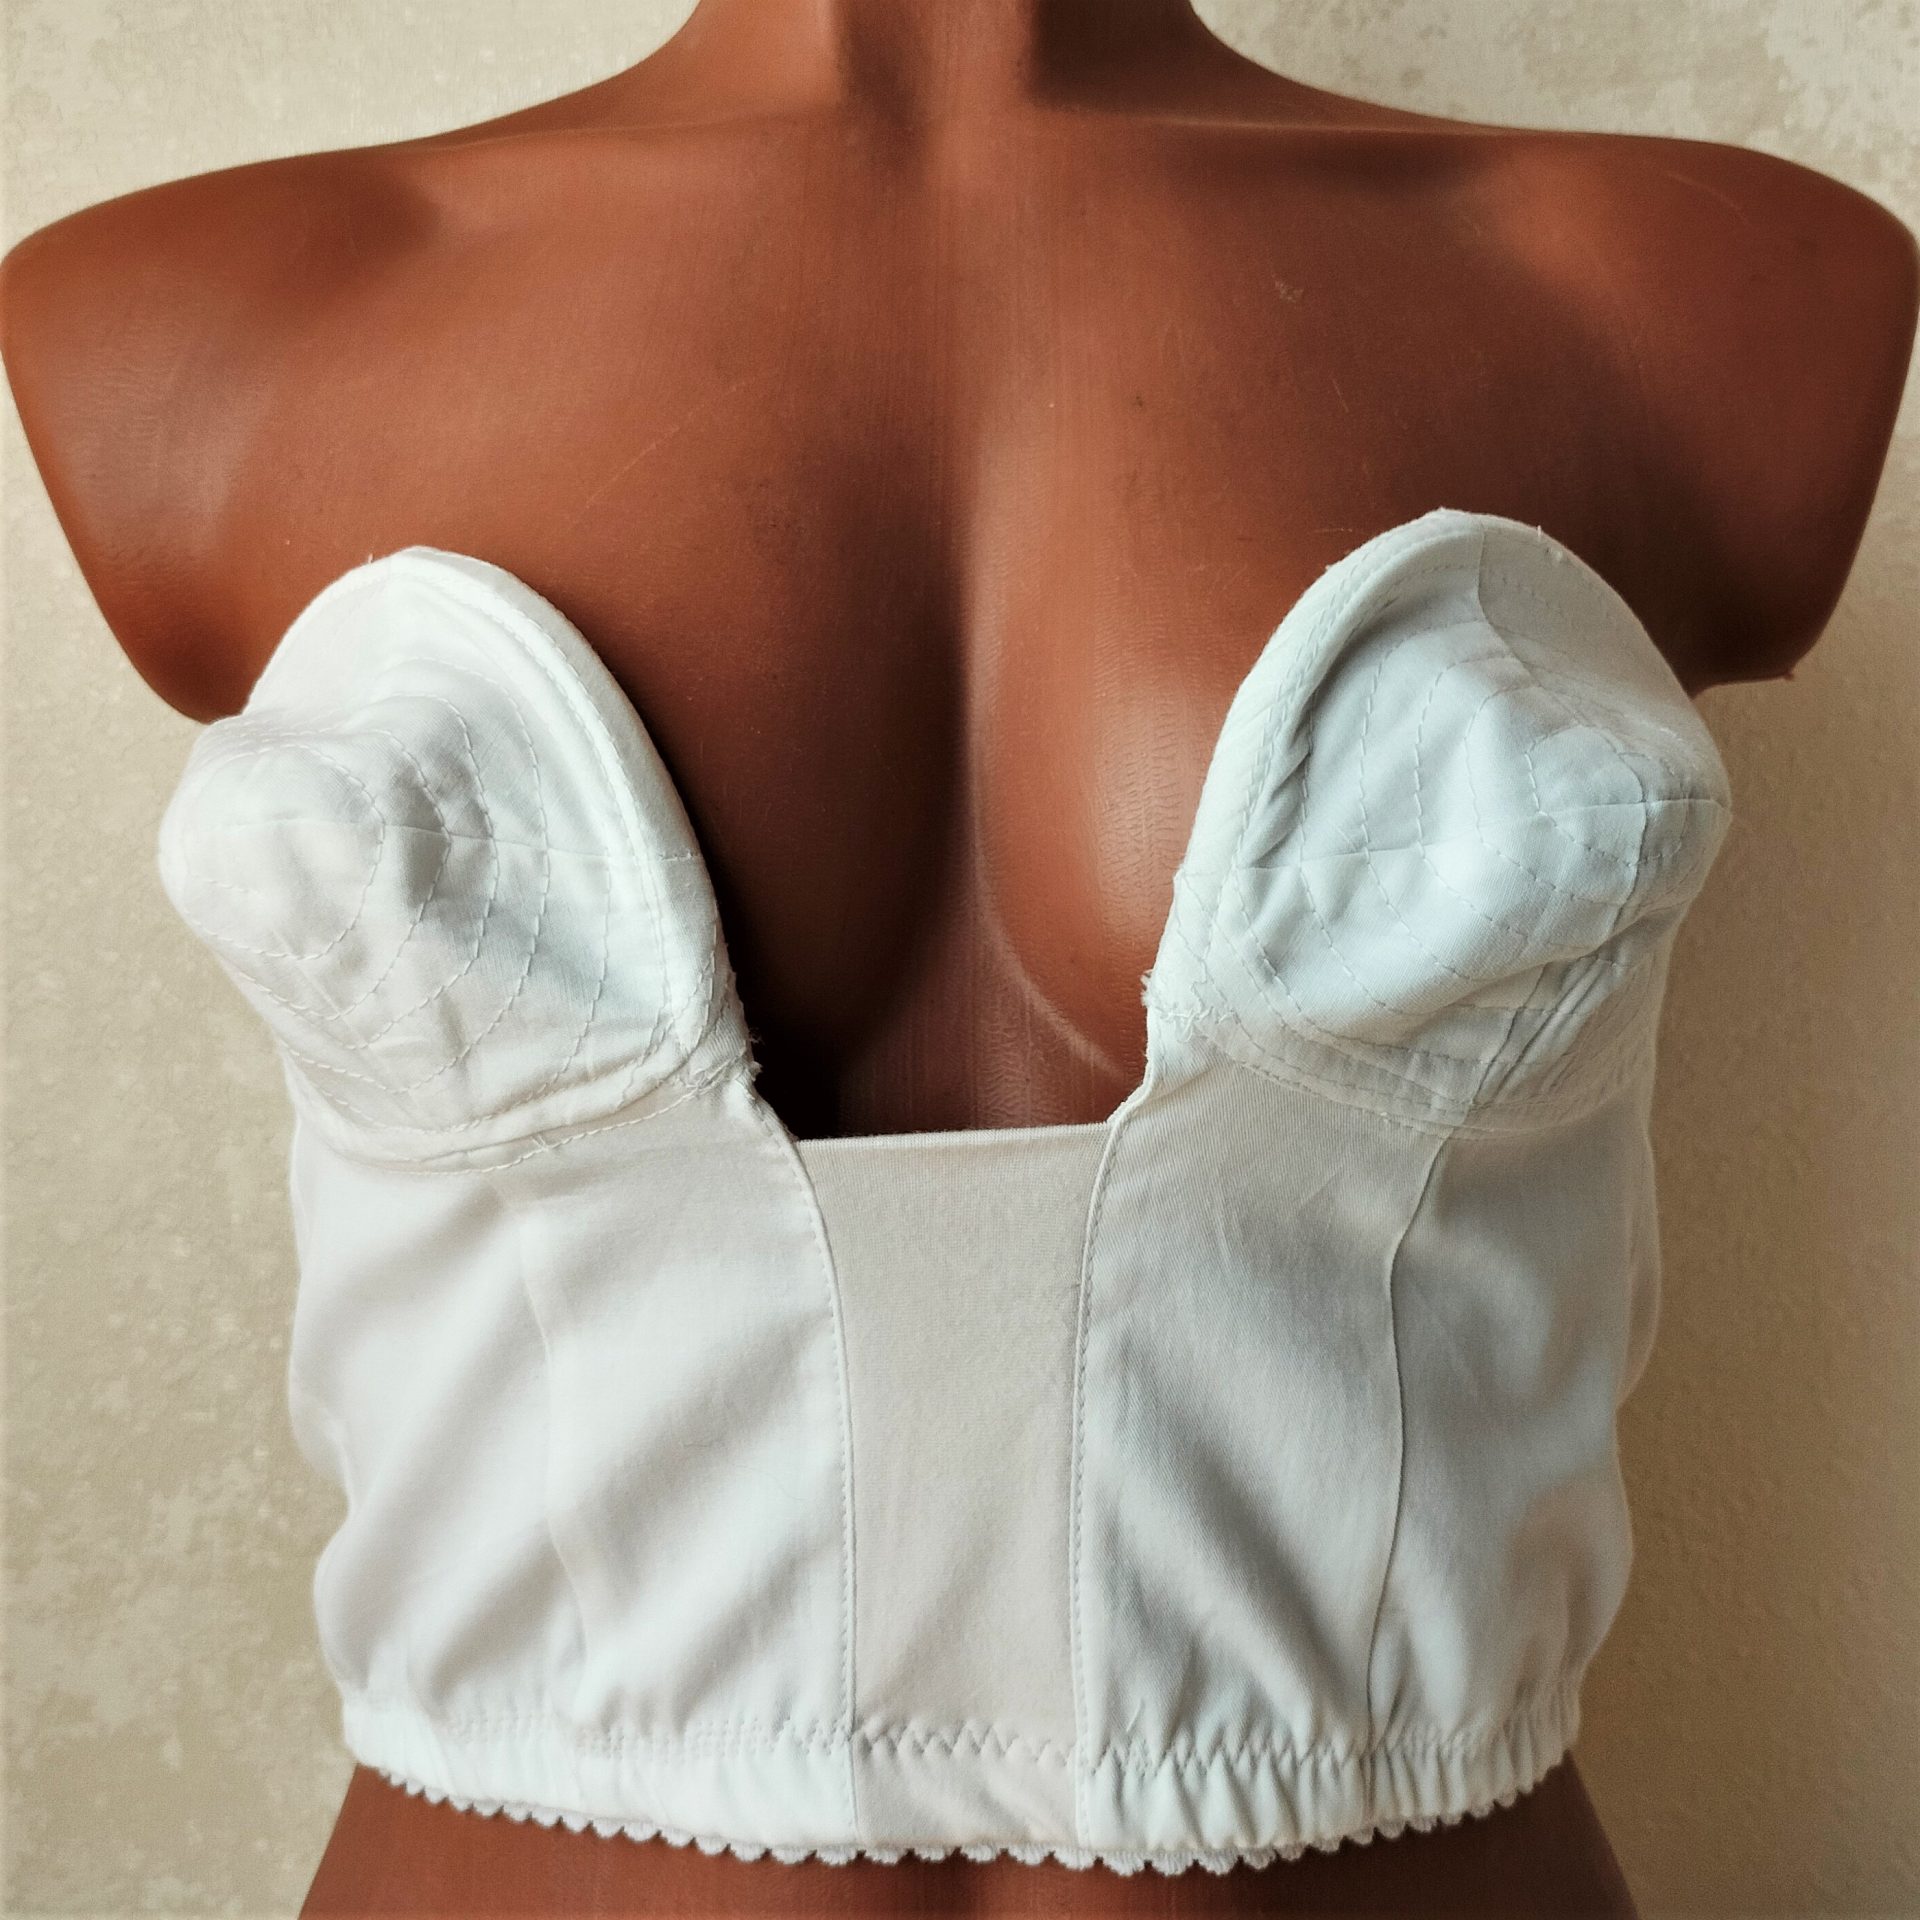 1950s longline bra pattern, Strapless longline bra pattern